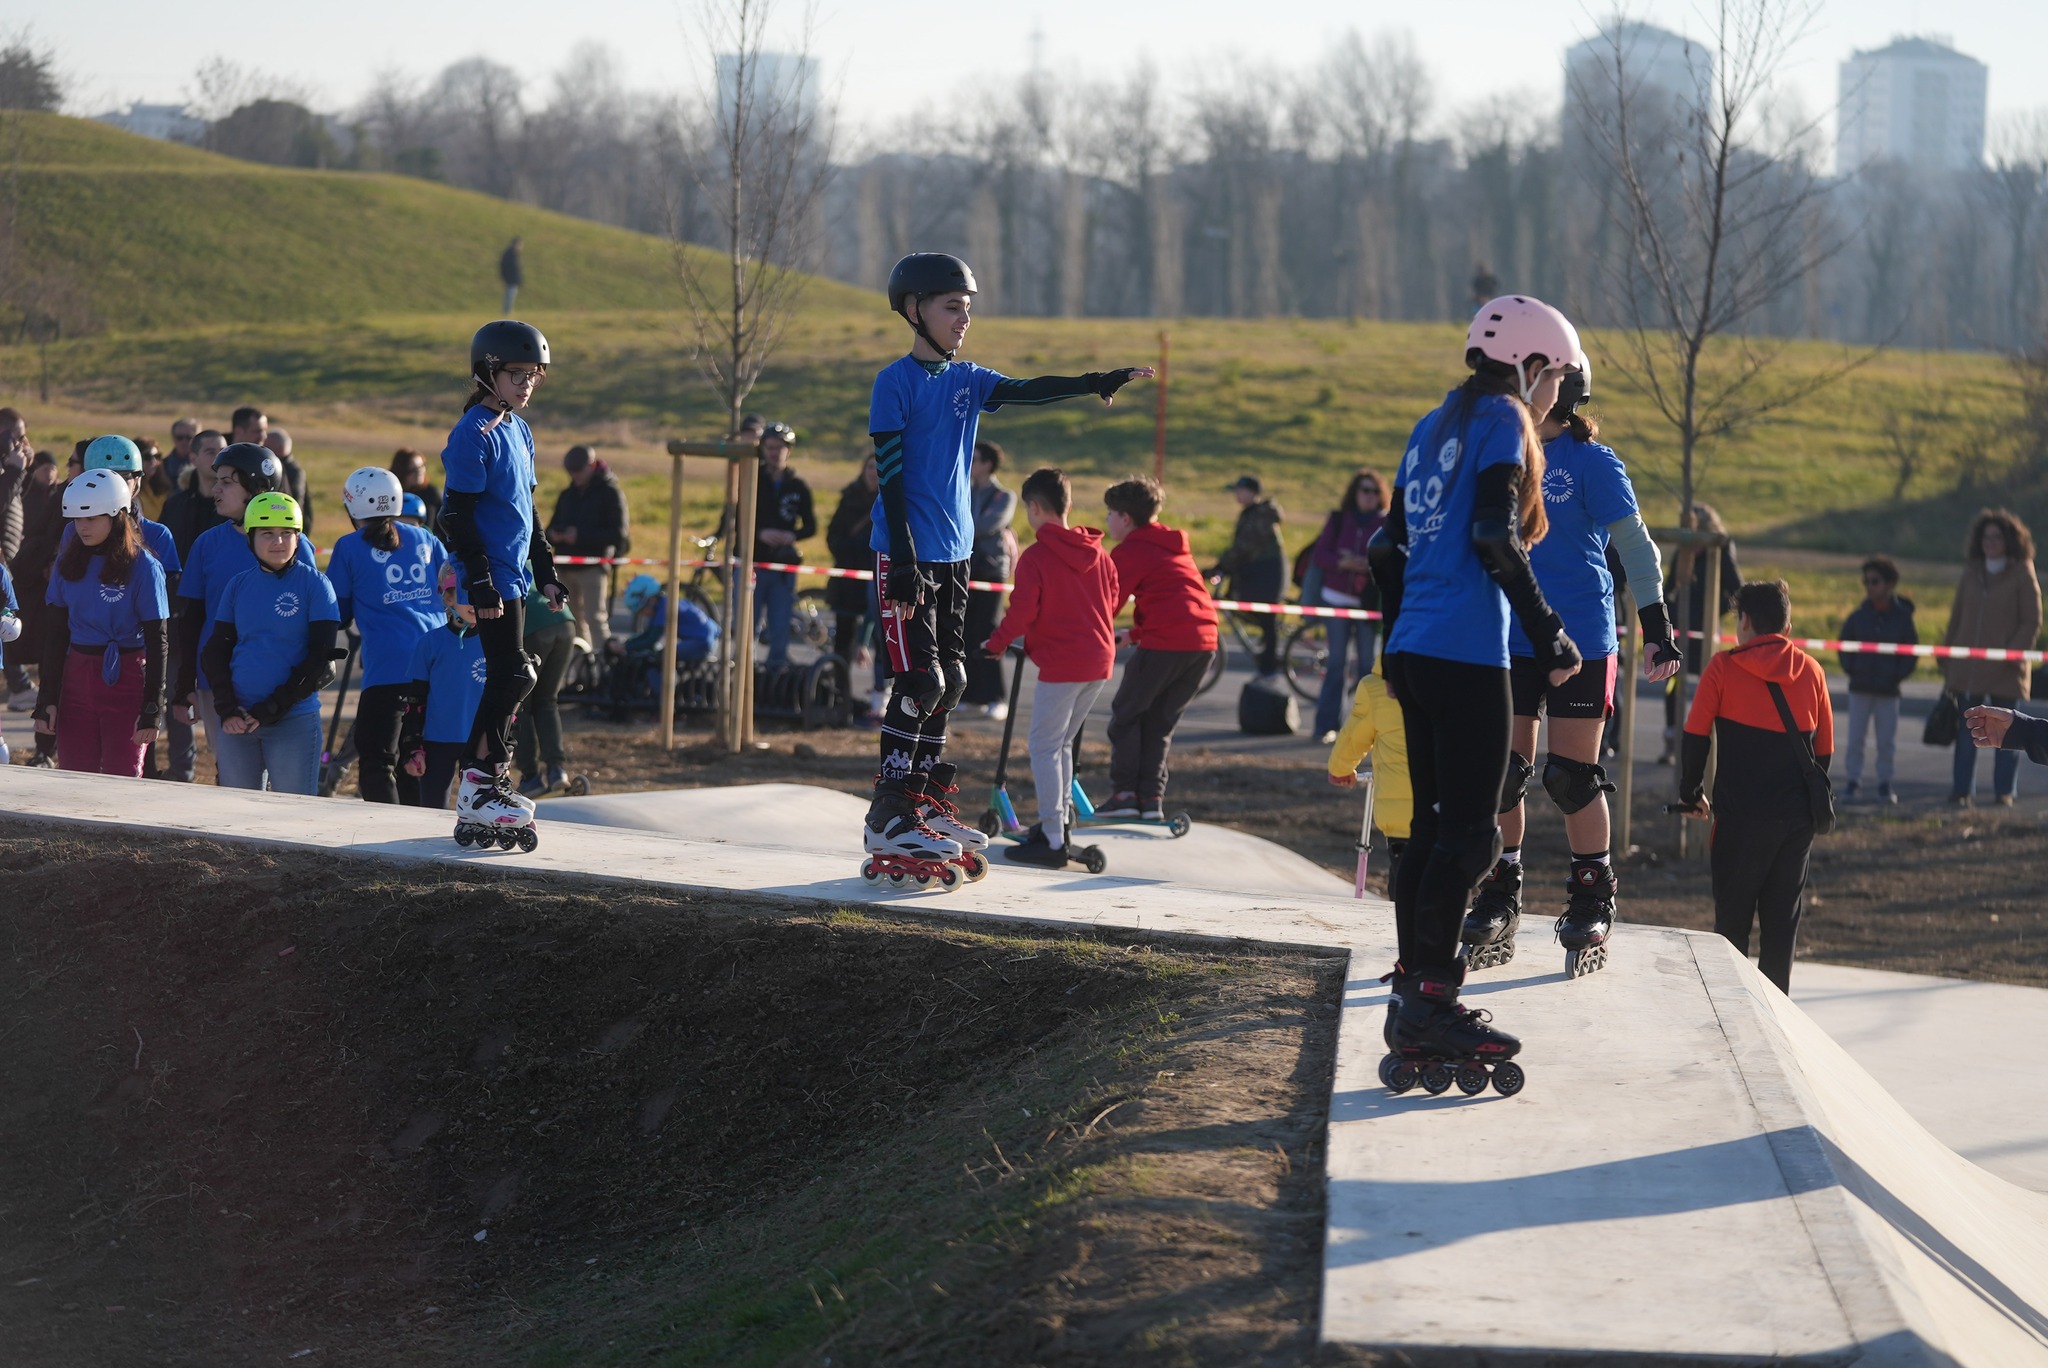 inaugurazione skatepark: bambini sulla pista